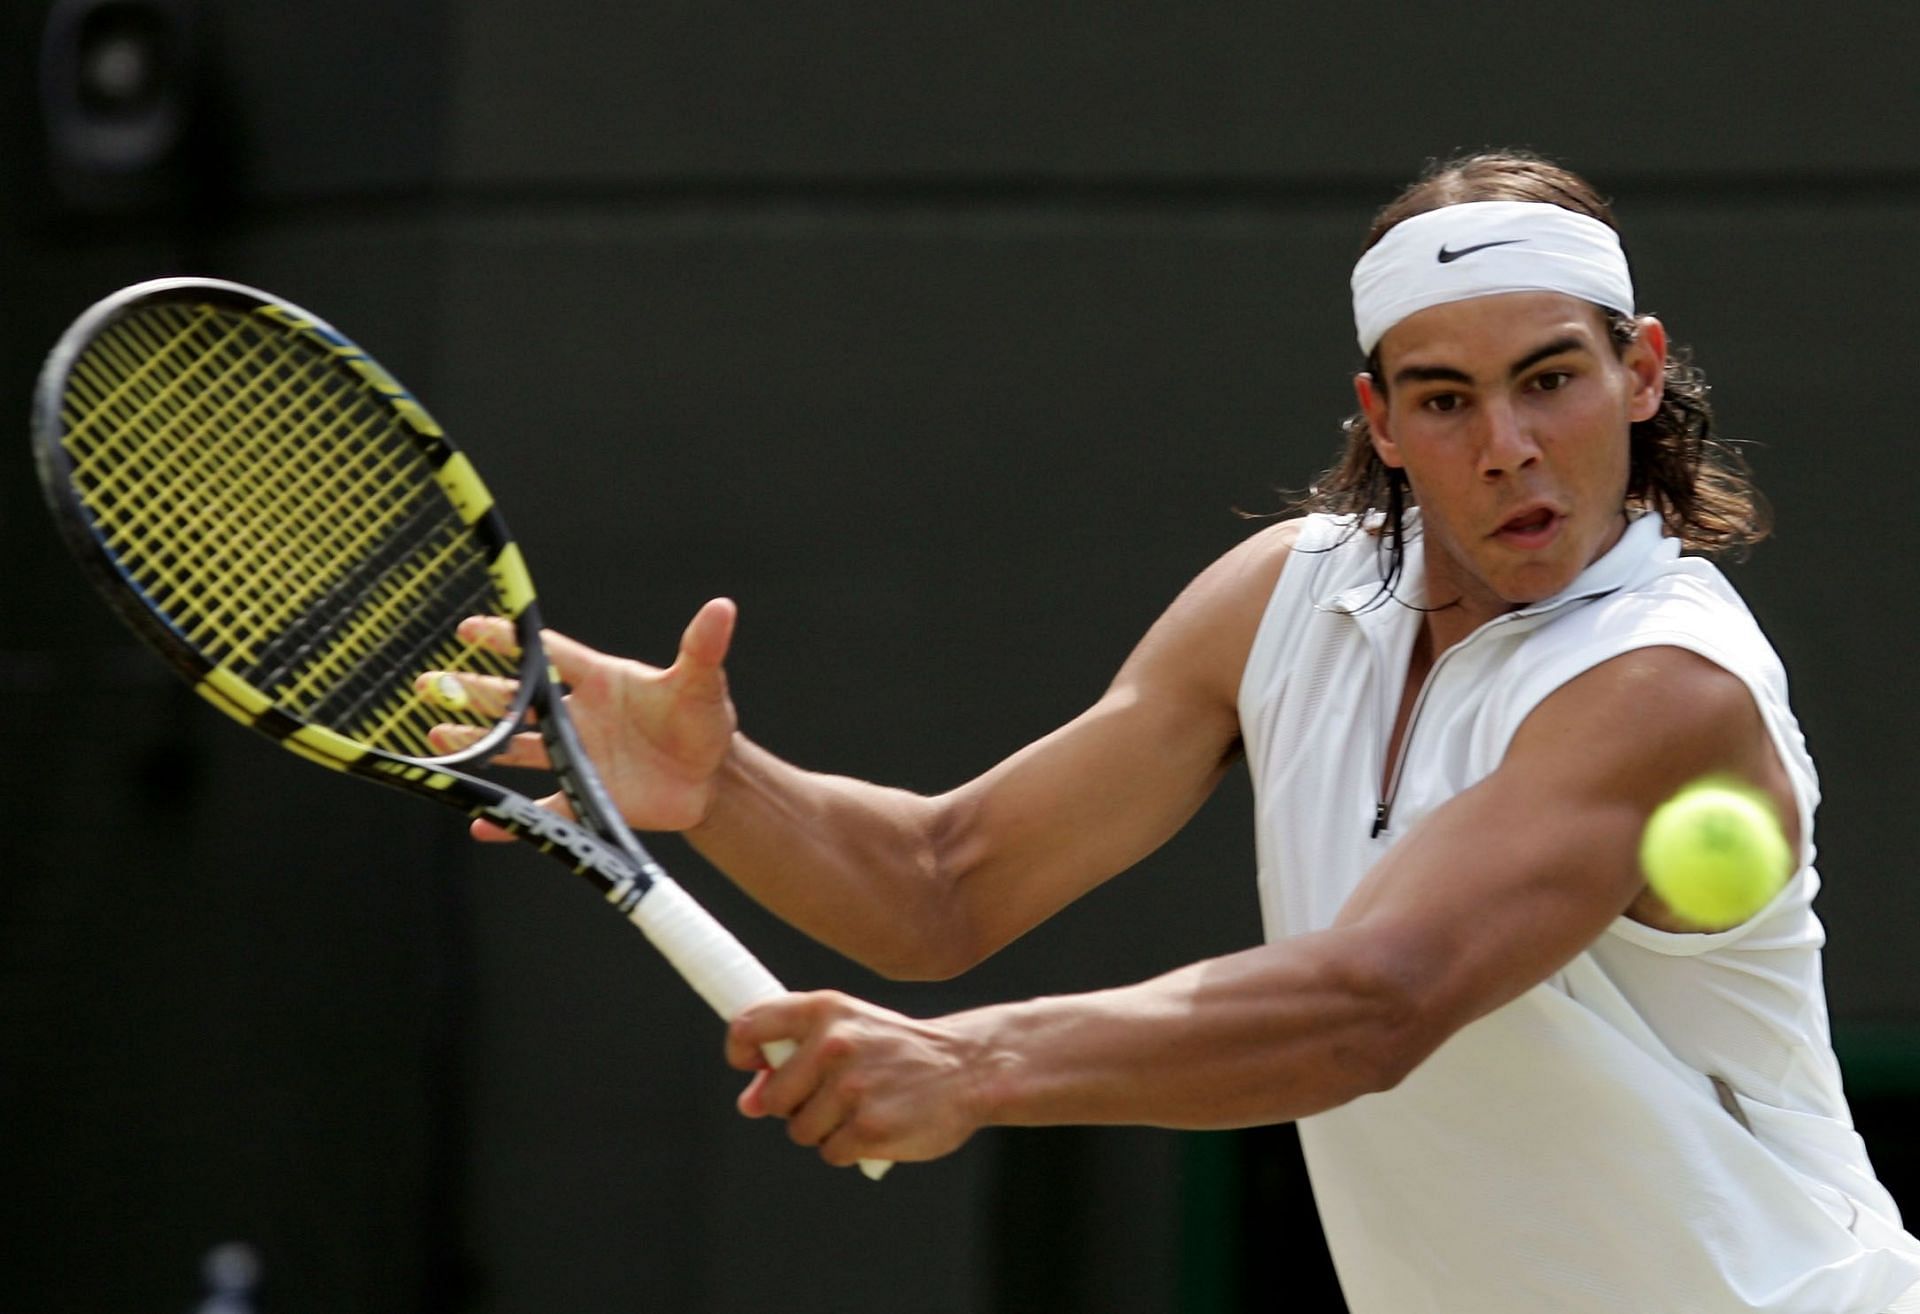 Rafael Nadal at the Wimbledon Championships: 2003